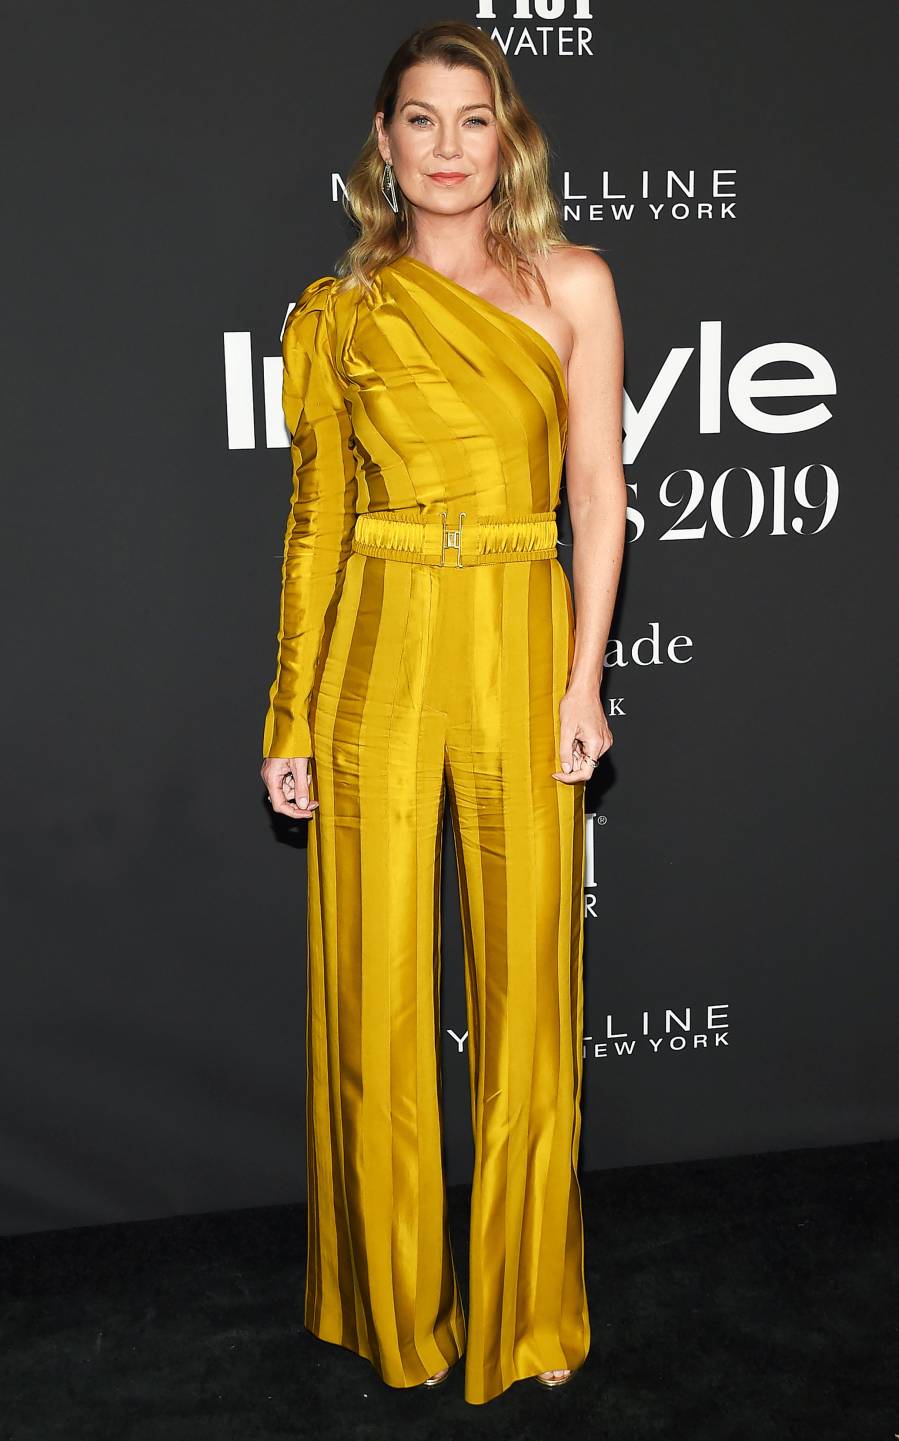 2019 InStyle Awards Best Dressed - Ellen Pompeo